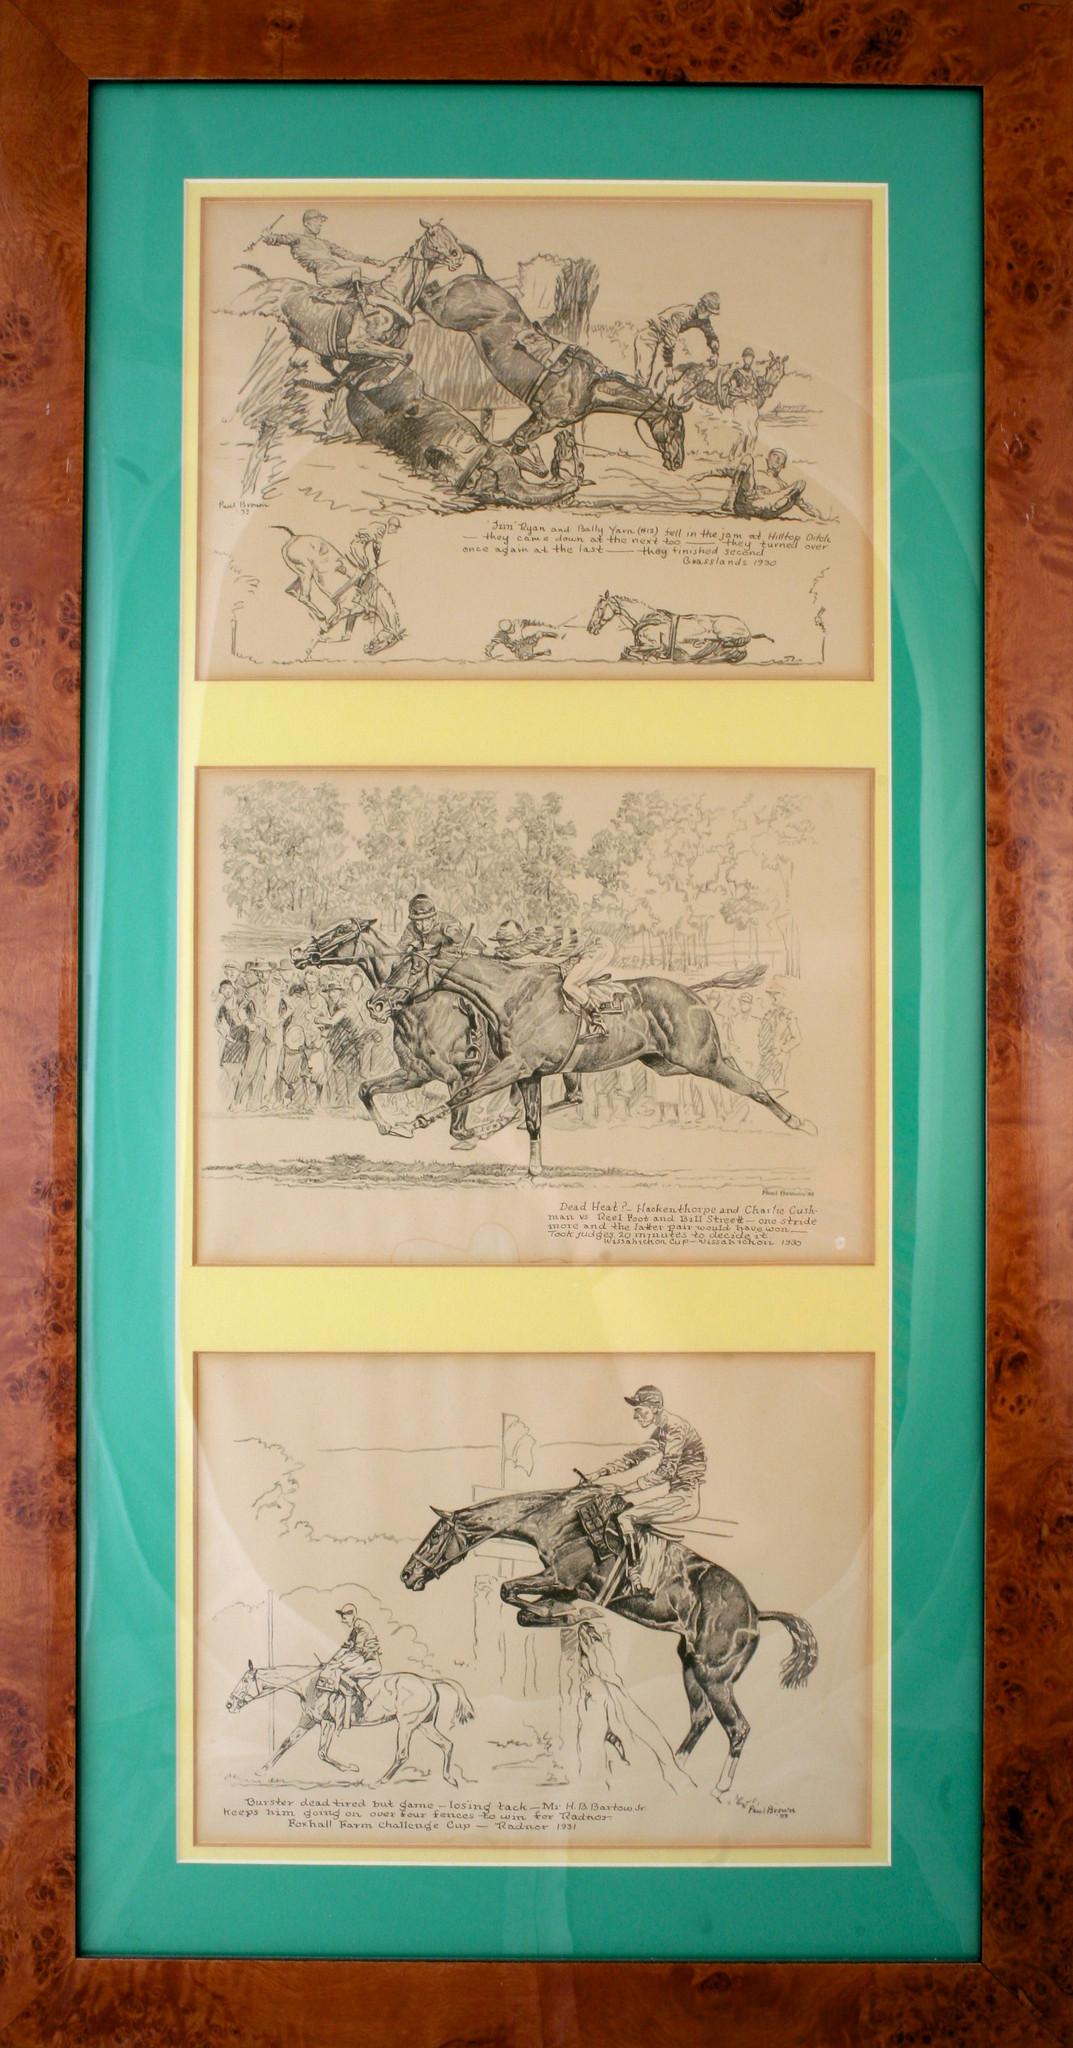 Grasslands 1930/ Wissahickon Cup 1930/ & Radnor 1931 Triptych by Paul Desmond Br - Art by Paul Desmond Brown